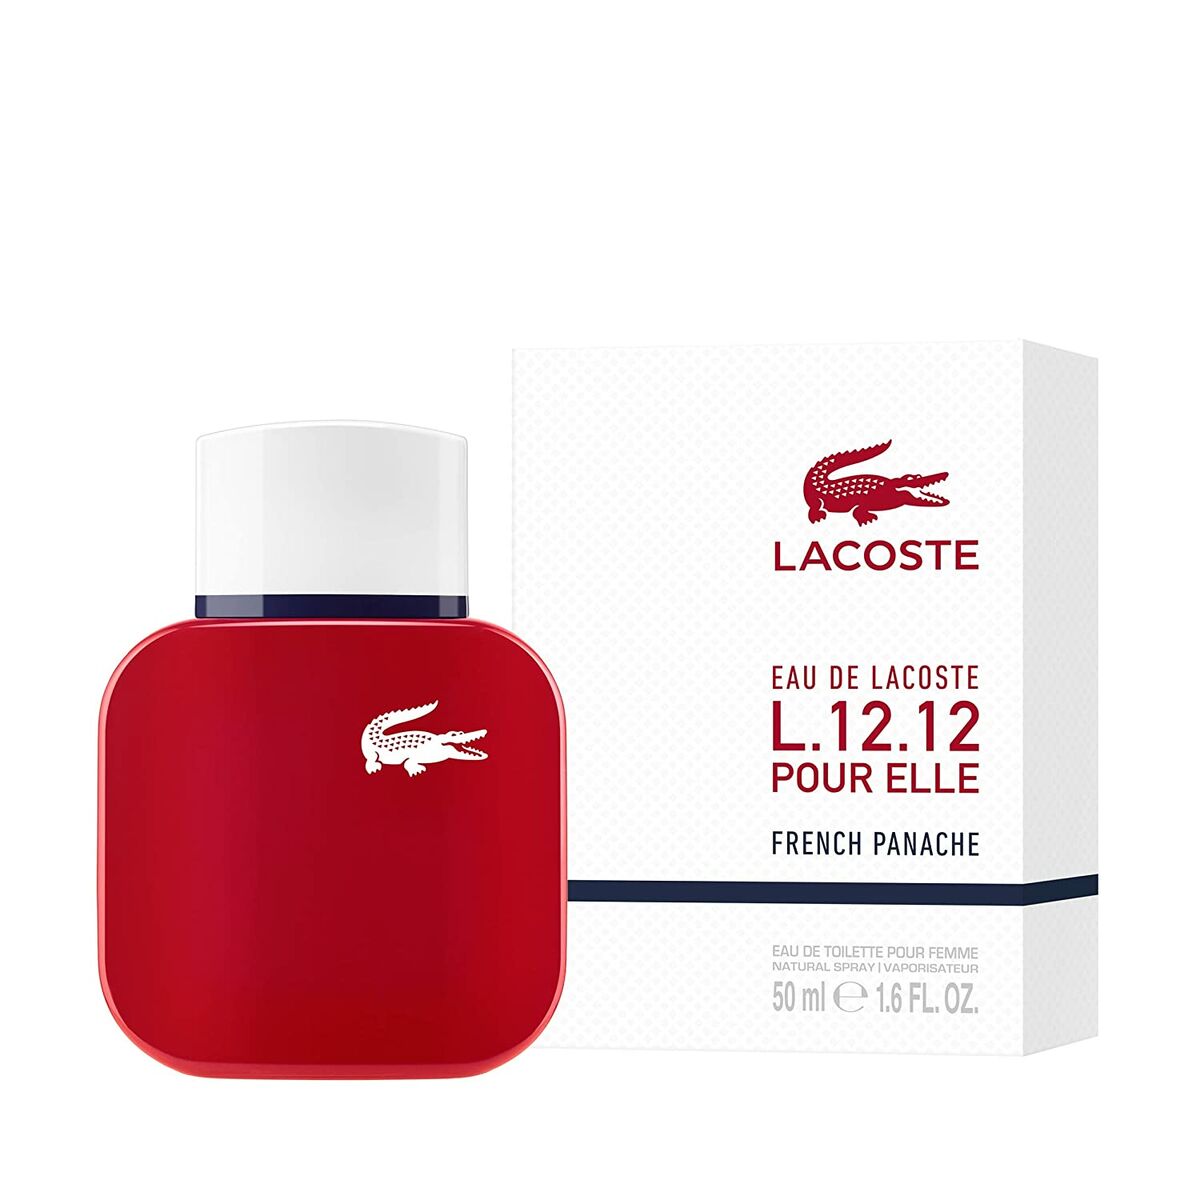 Women's Perfume Lacoste EDT Eau de Lacoste L.12.12 French Panache 50 ml-0